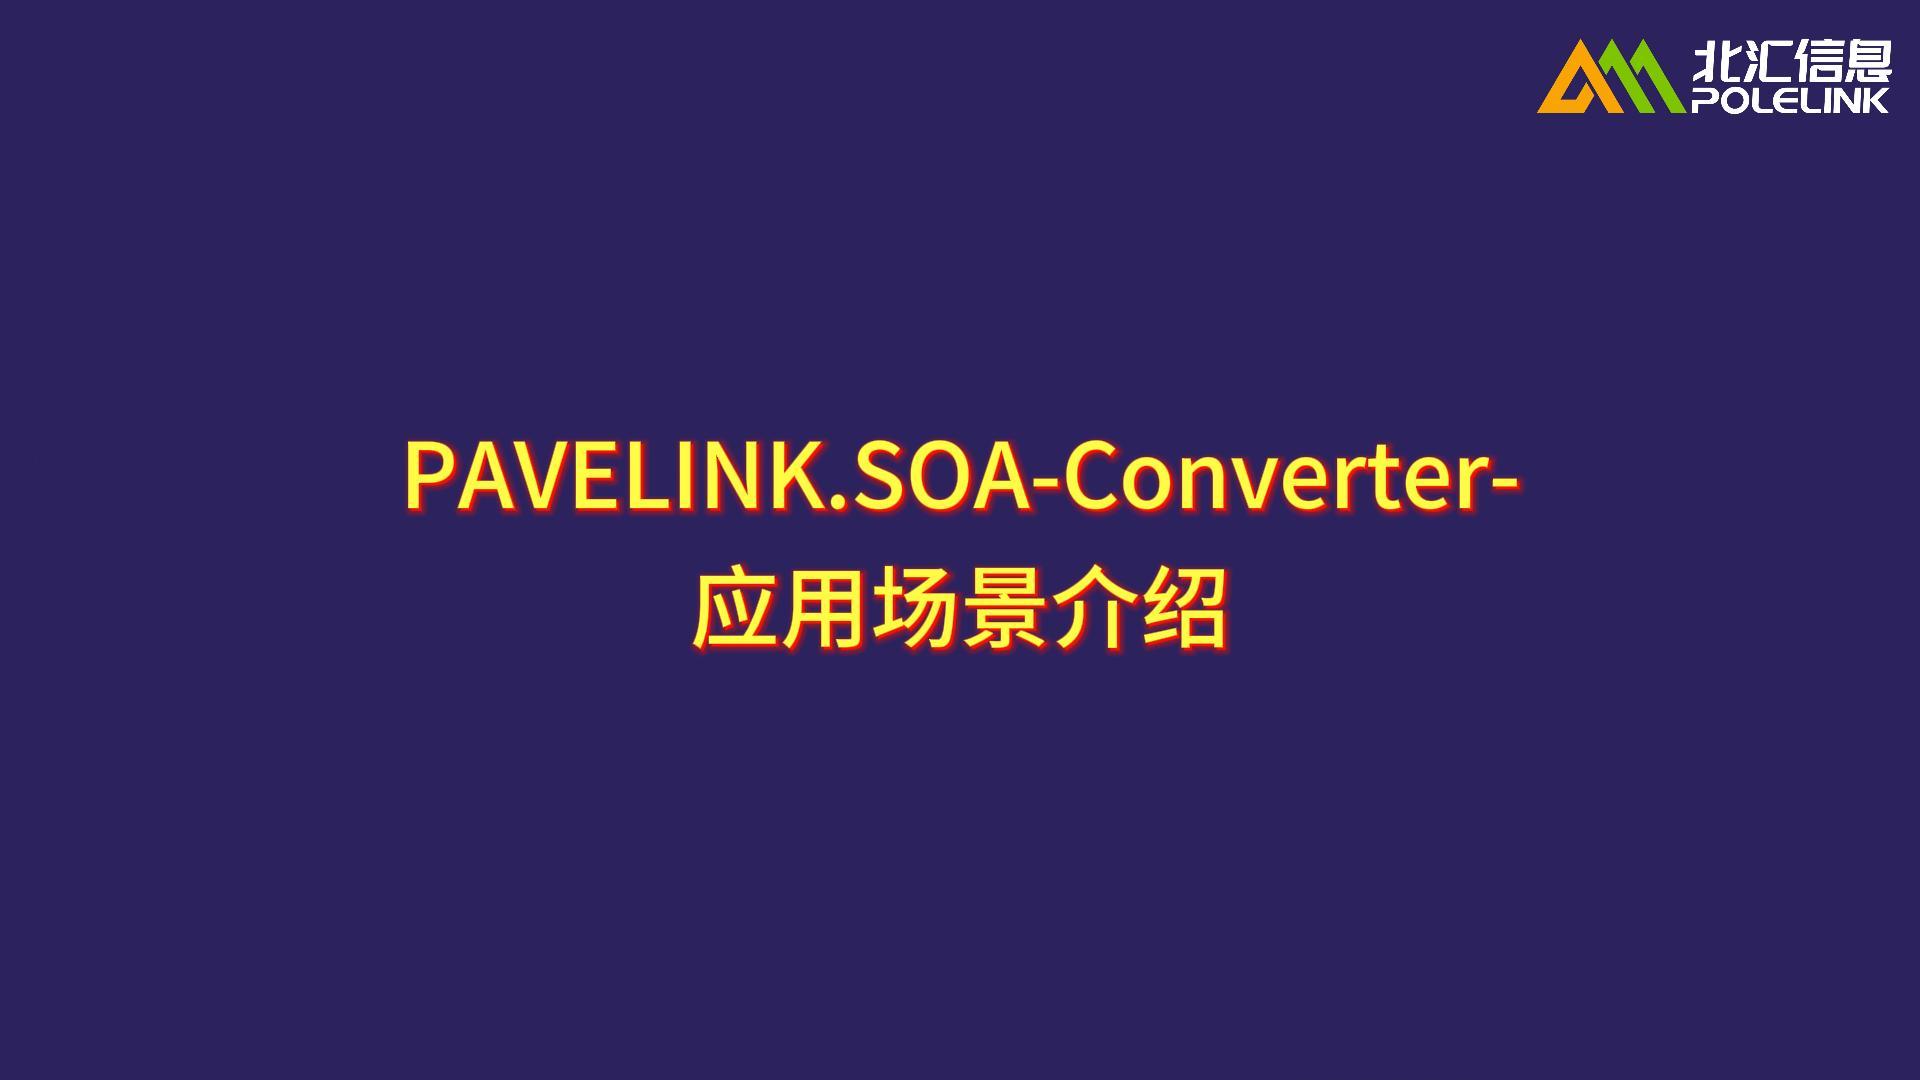 PAVELINK.SOA-Converter-应用场景介绍#SOA #IDL转化 #汽车架构开发

 